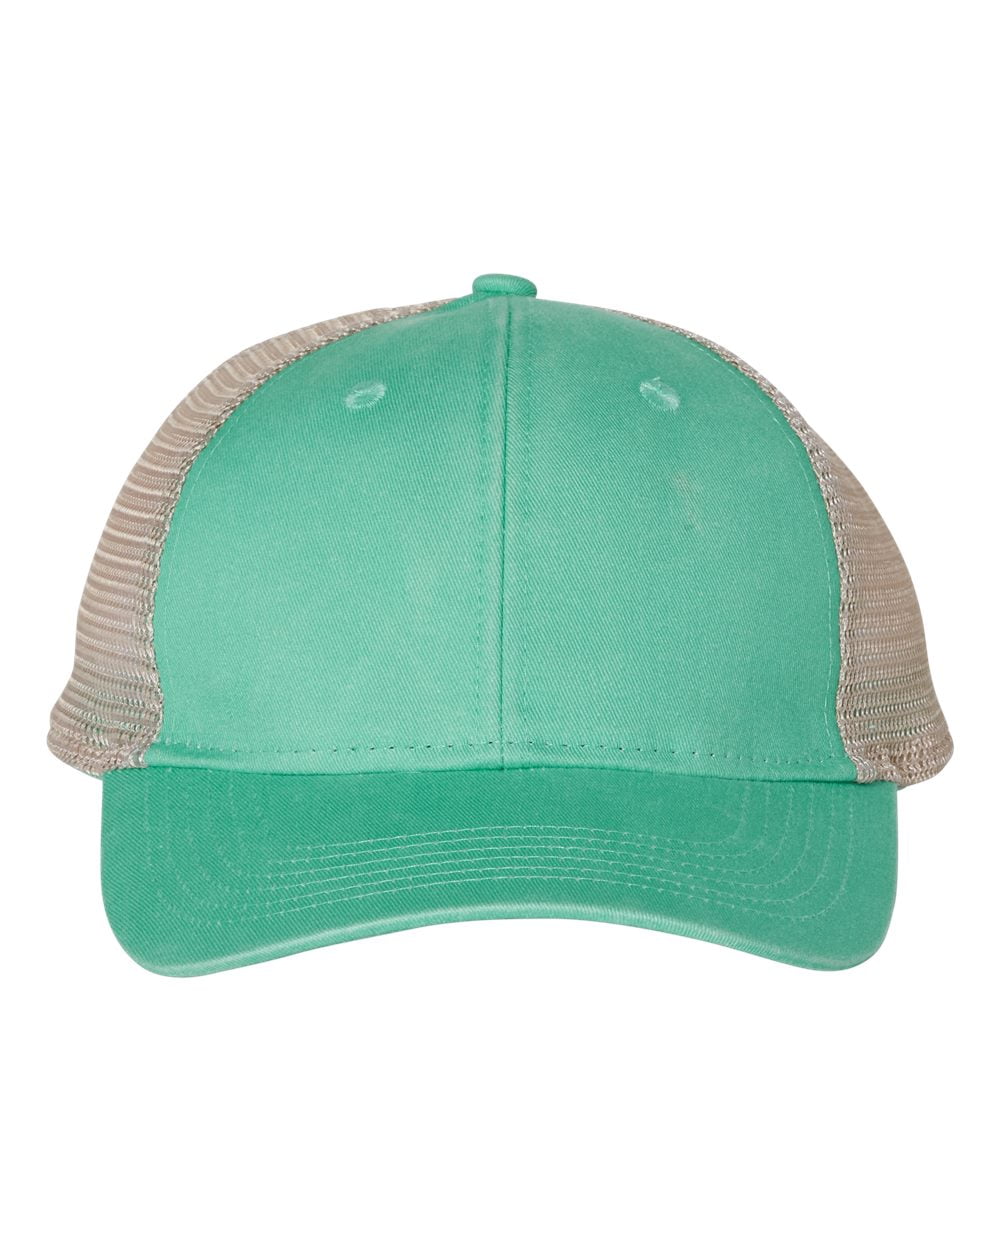 Custom Monogrammed Childrens Ouray Trucker Hat Mint Green